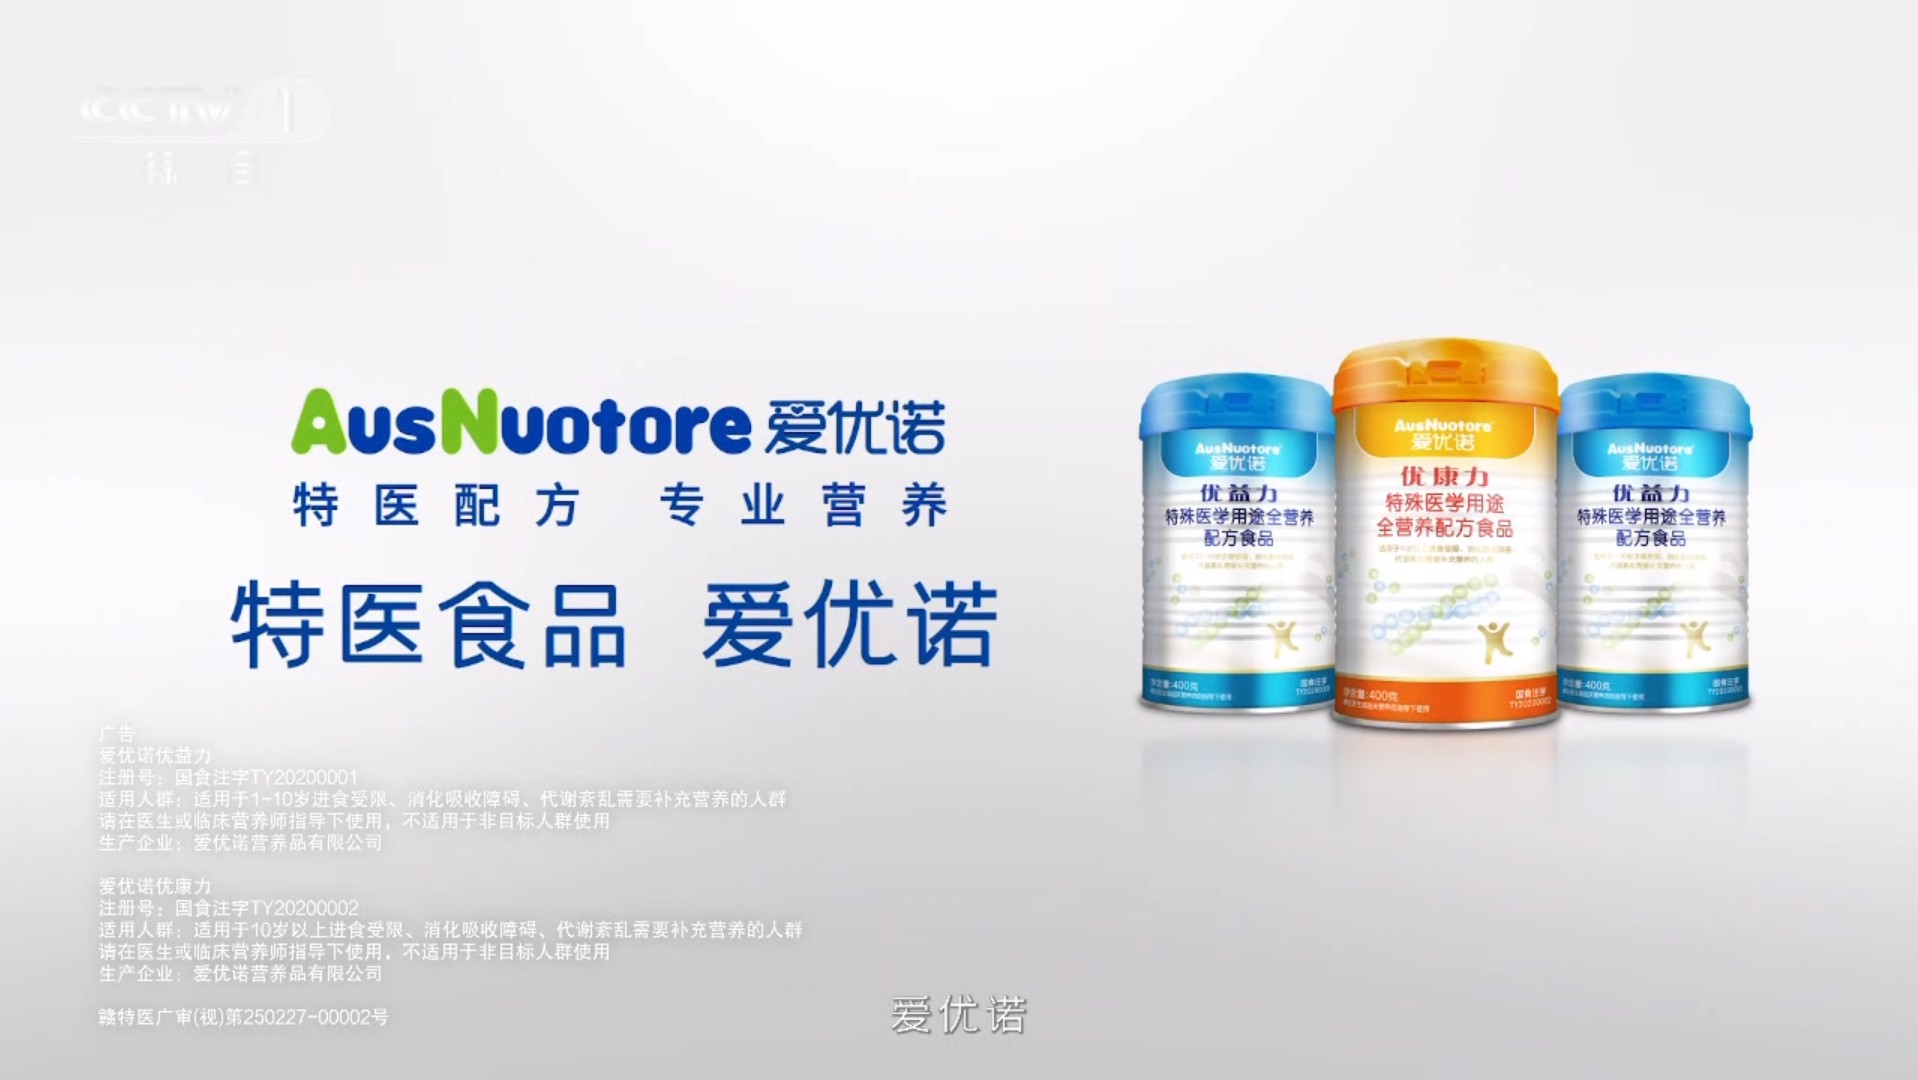 沙利文权威认证，爱优诺中国特医食品国内品牌销量领先！